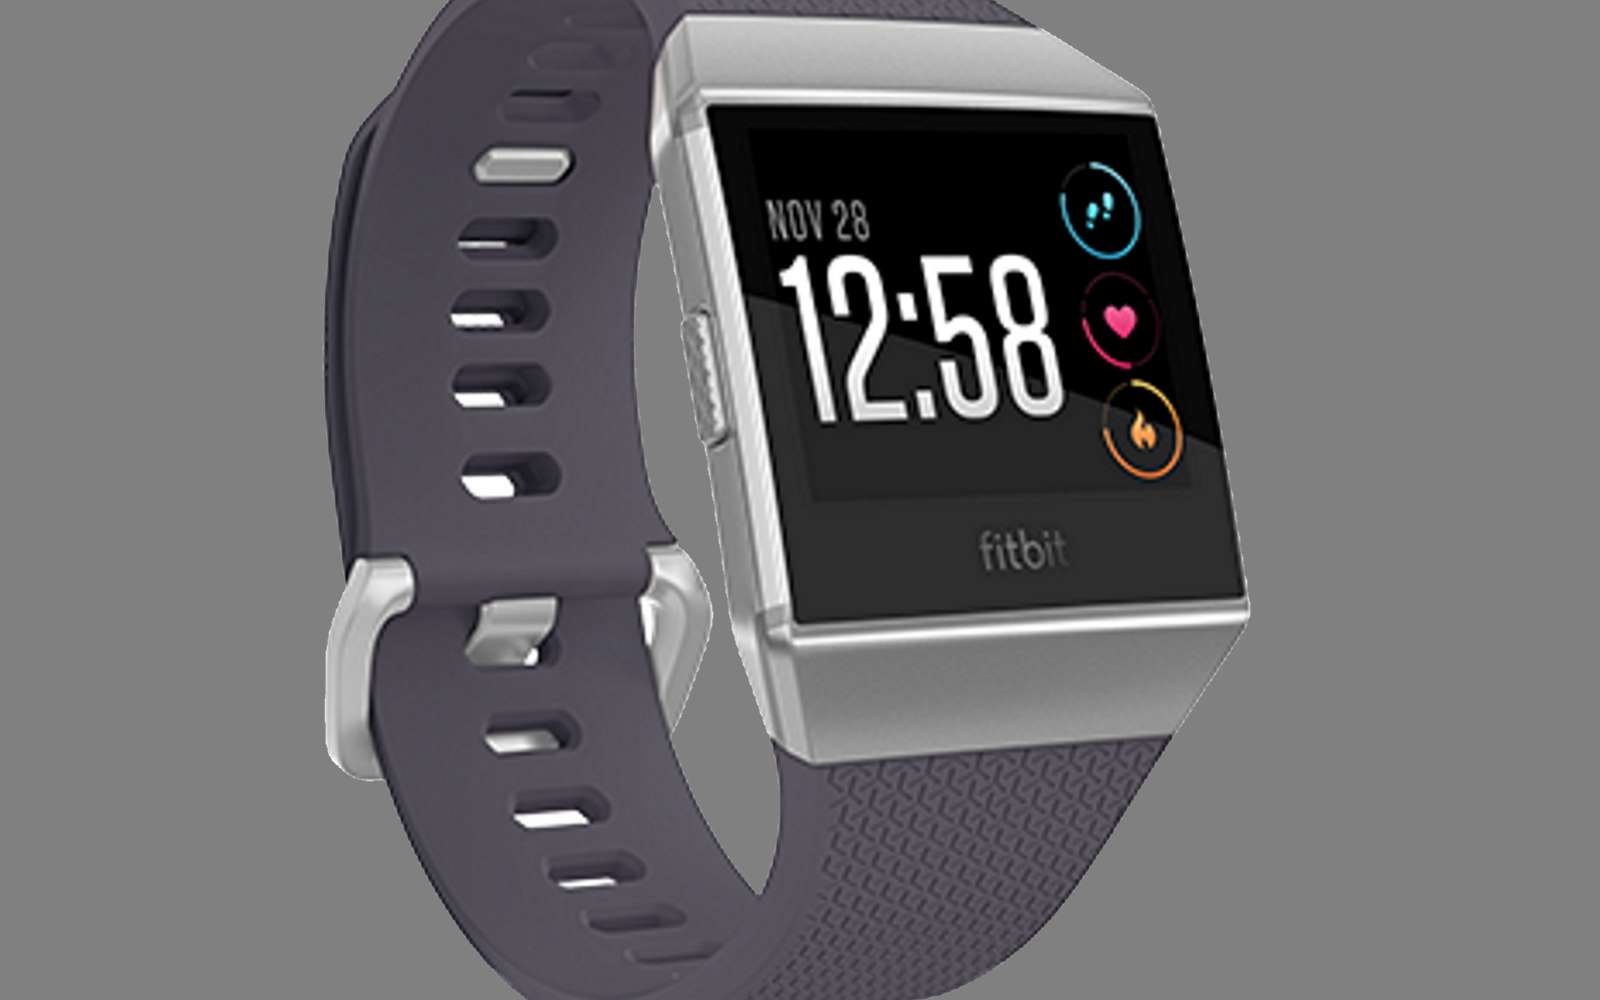 L’ensemble des montres Ionic de Fitbit est rappelé par la marque en raison d’un problème de surchauffe de batterie. © Fitbit